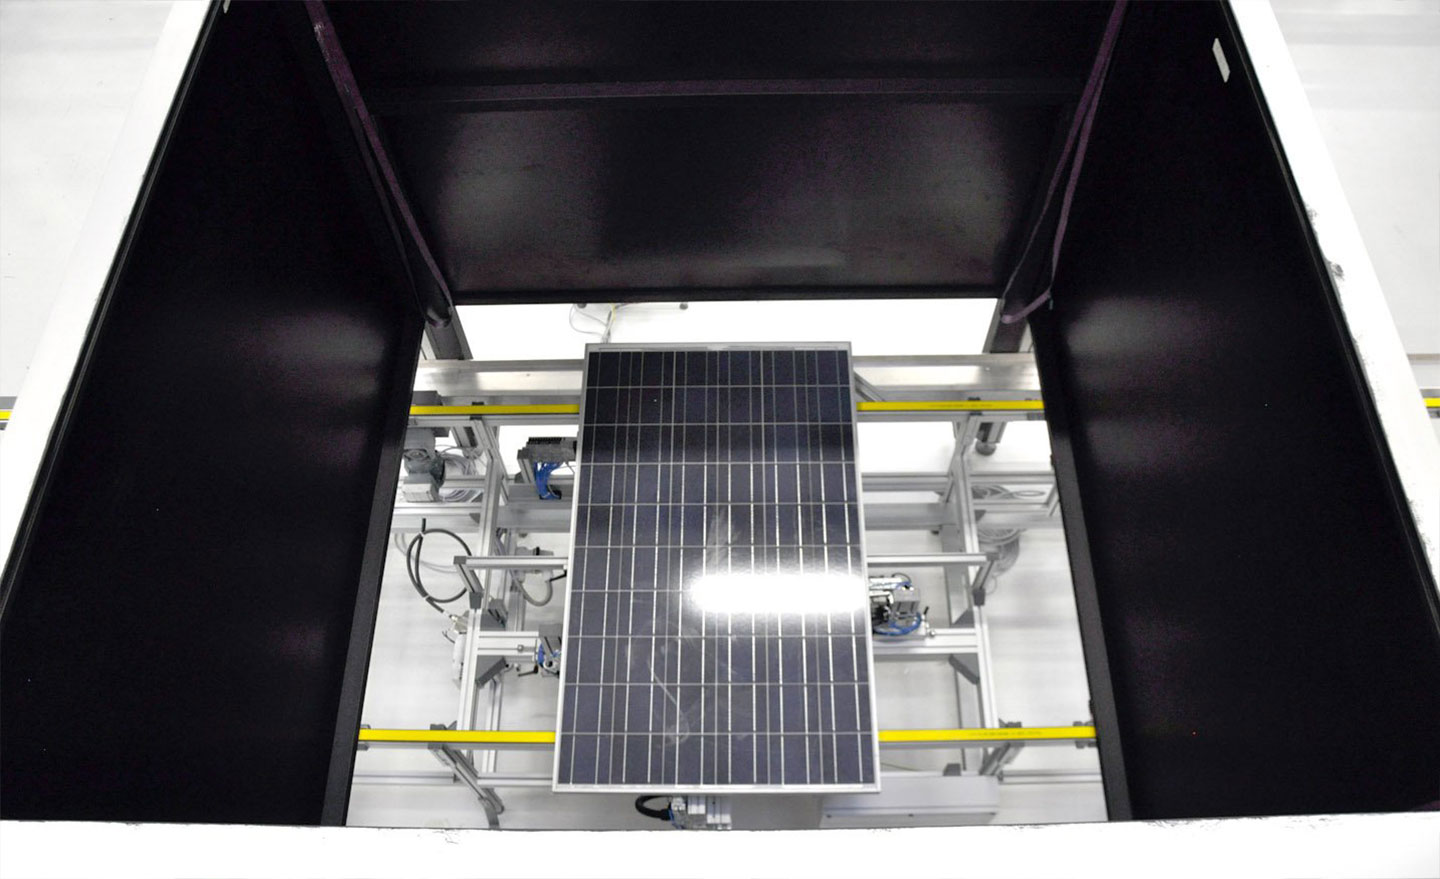 Solar technology assembly line